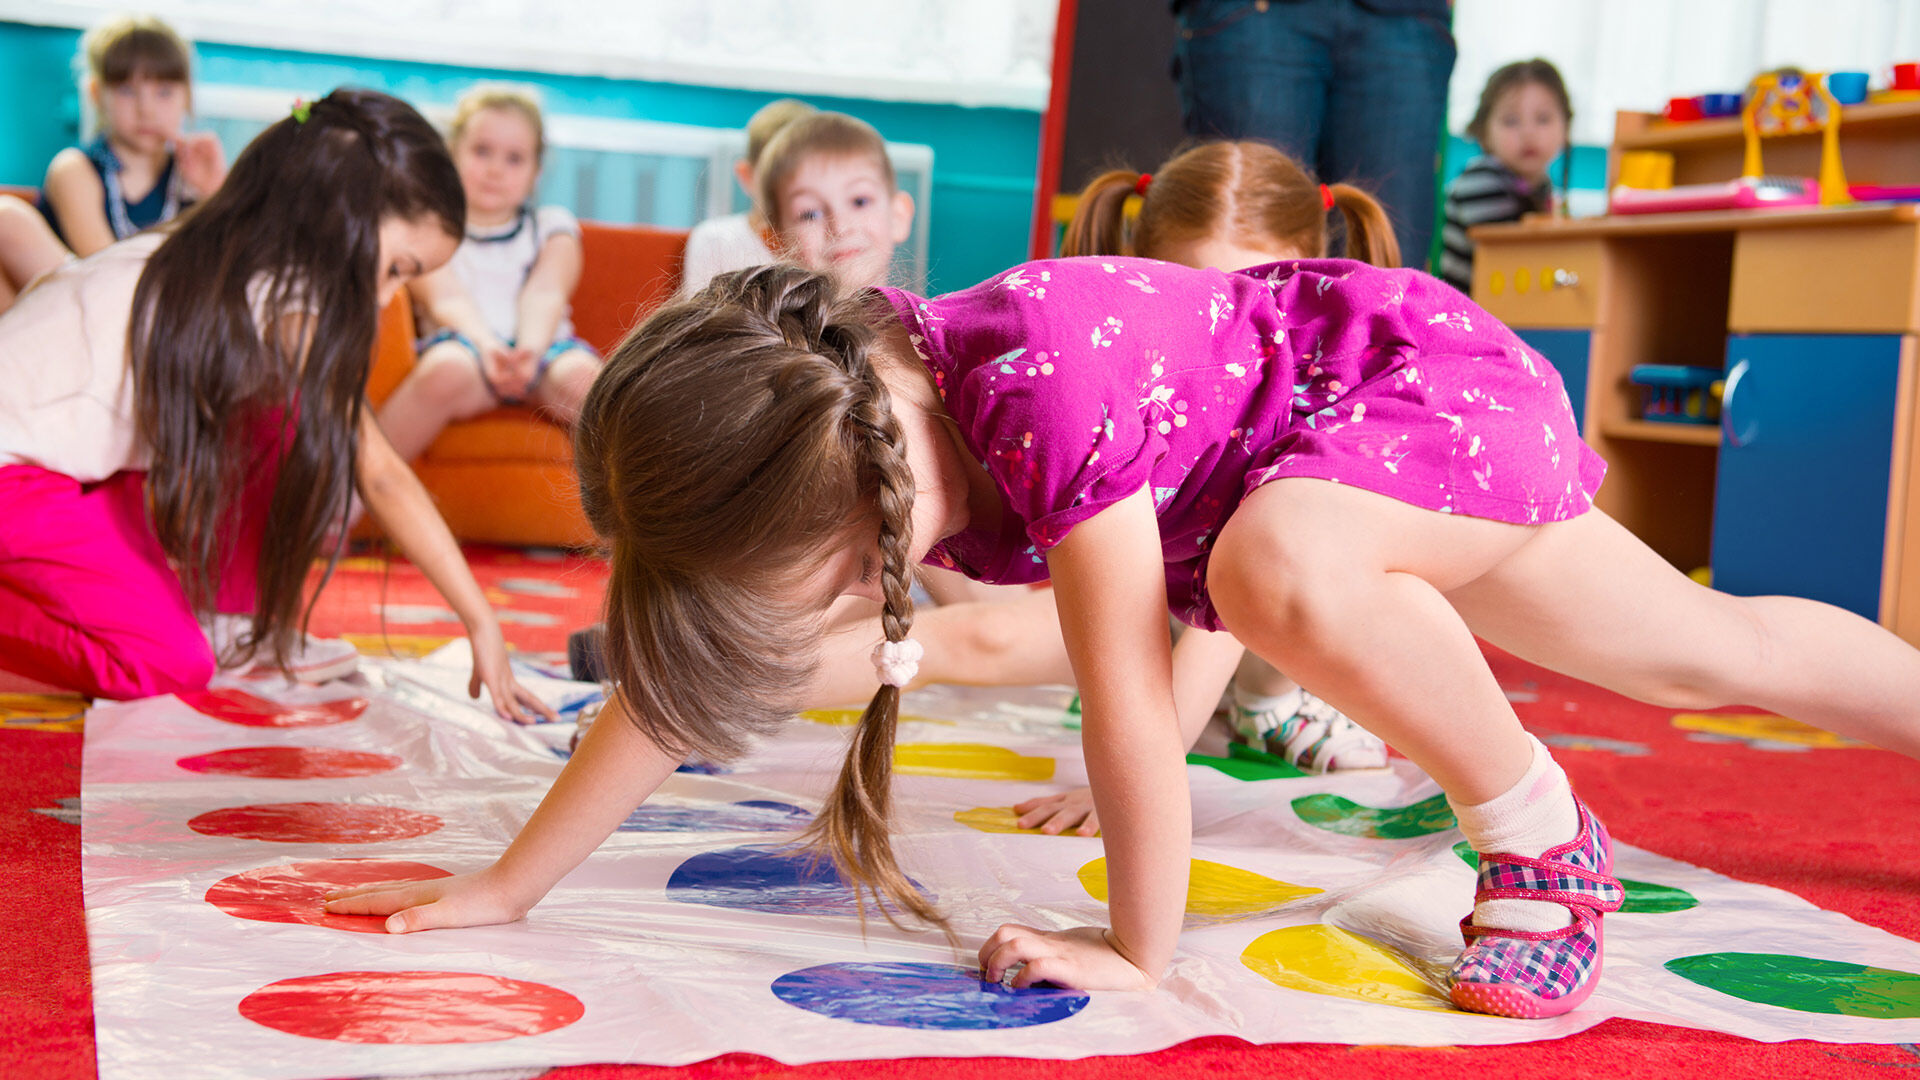 Des enfants jouent au Twister dans une salle de classe colorée, illustrant le mouvement et l'espièglerie.